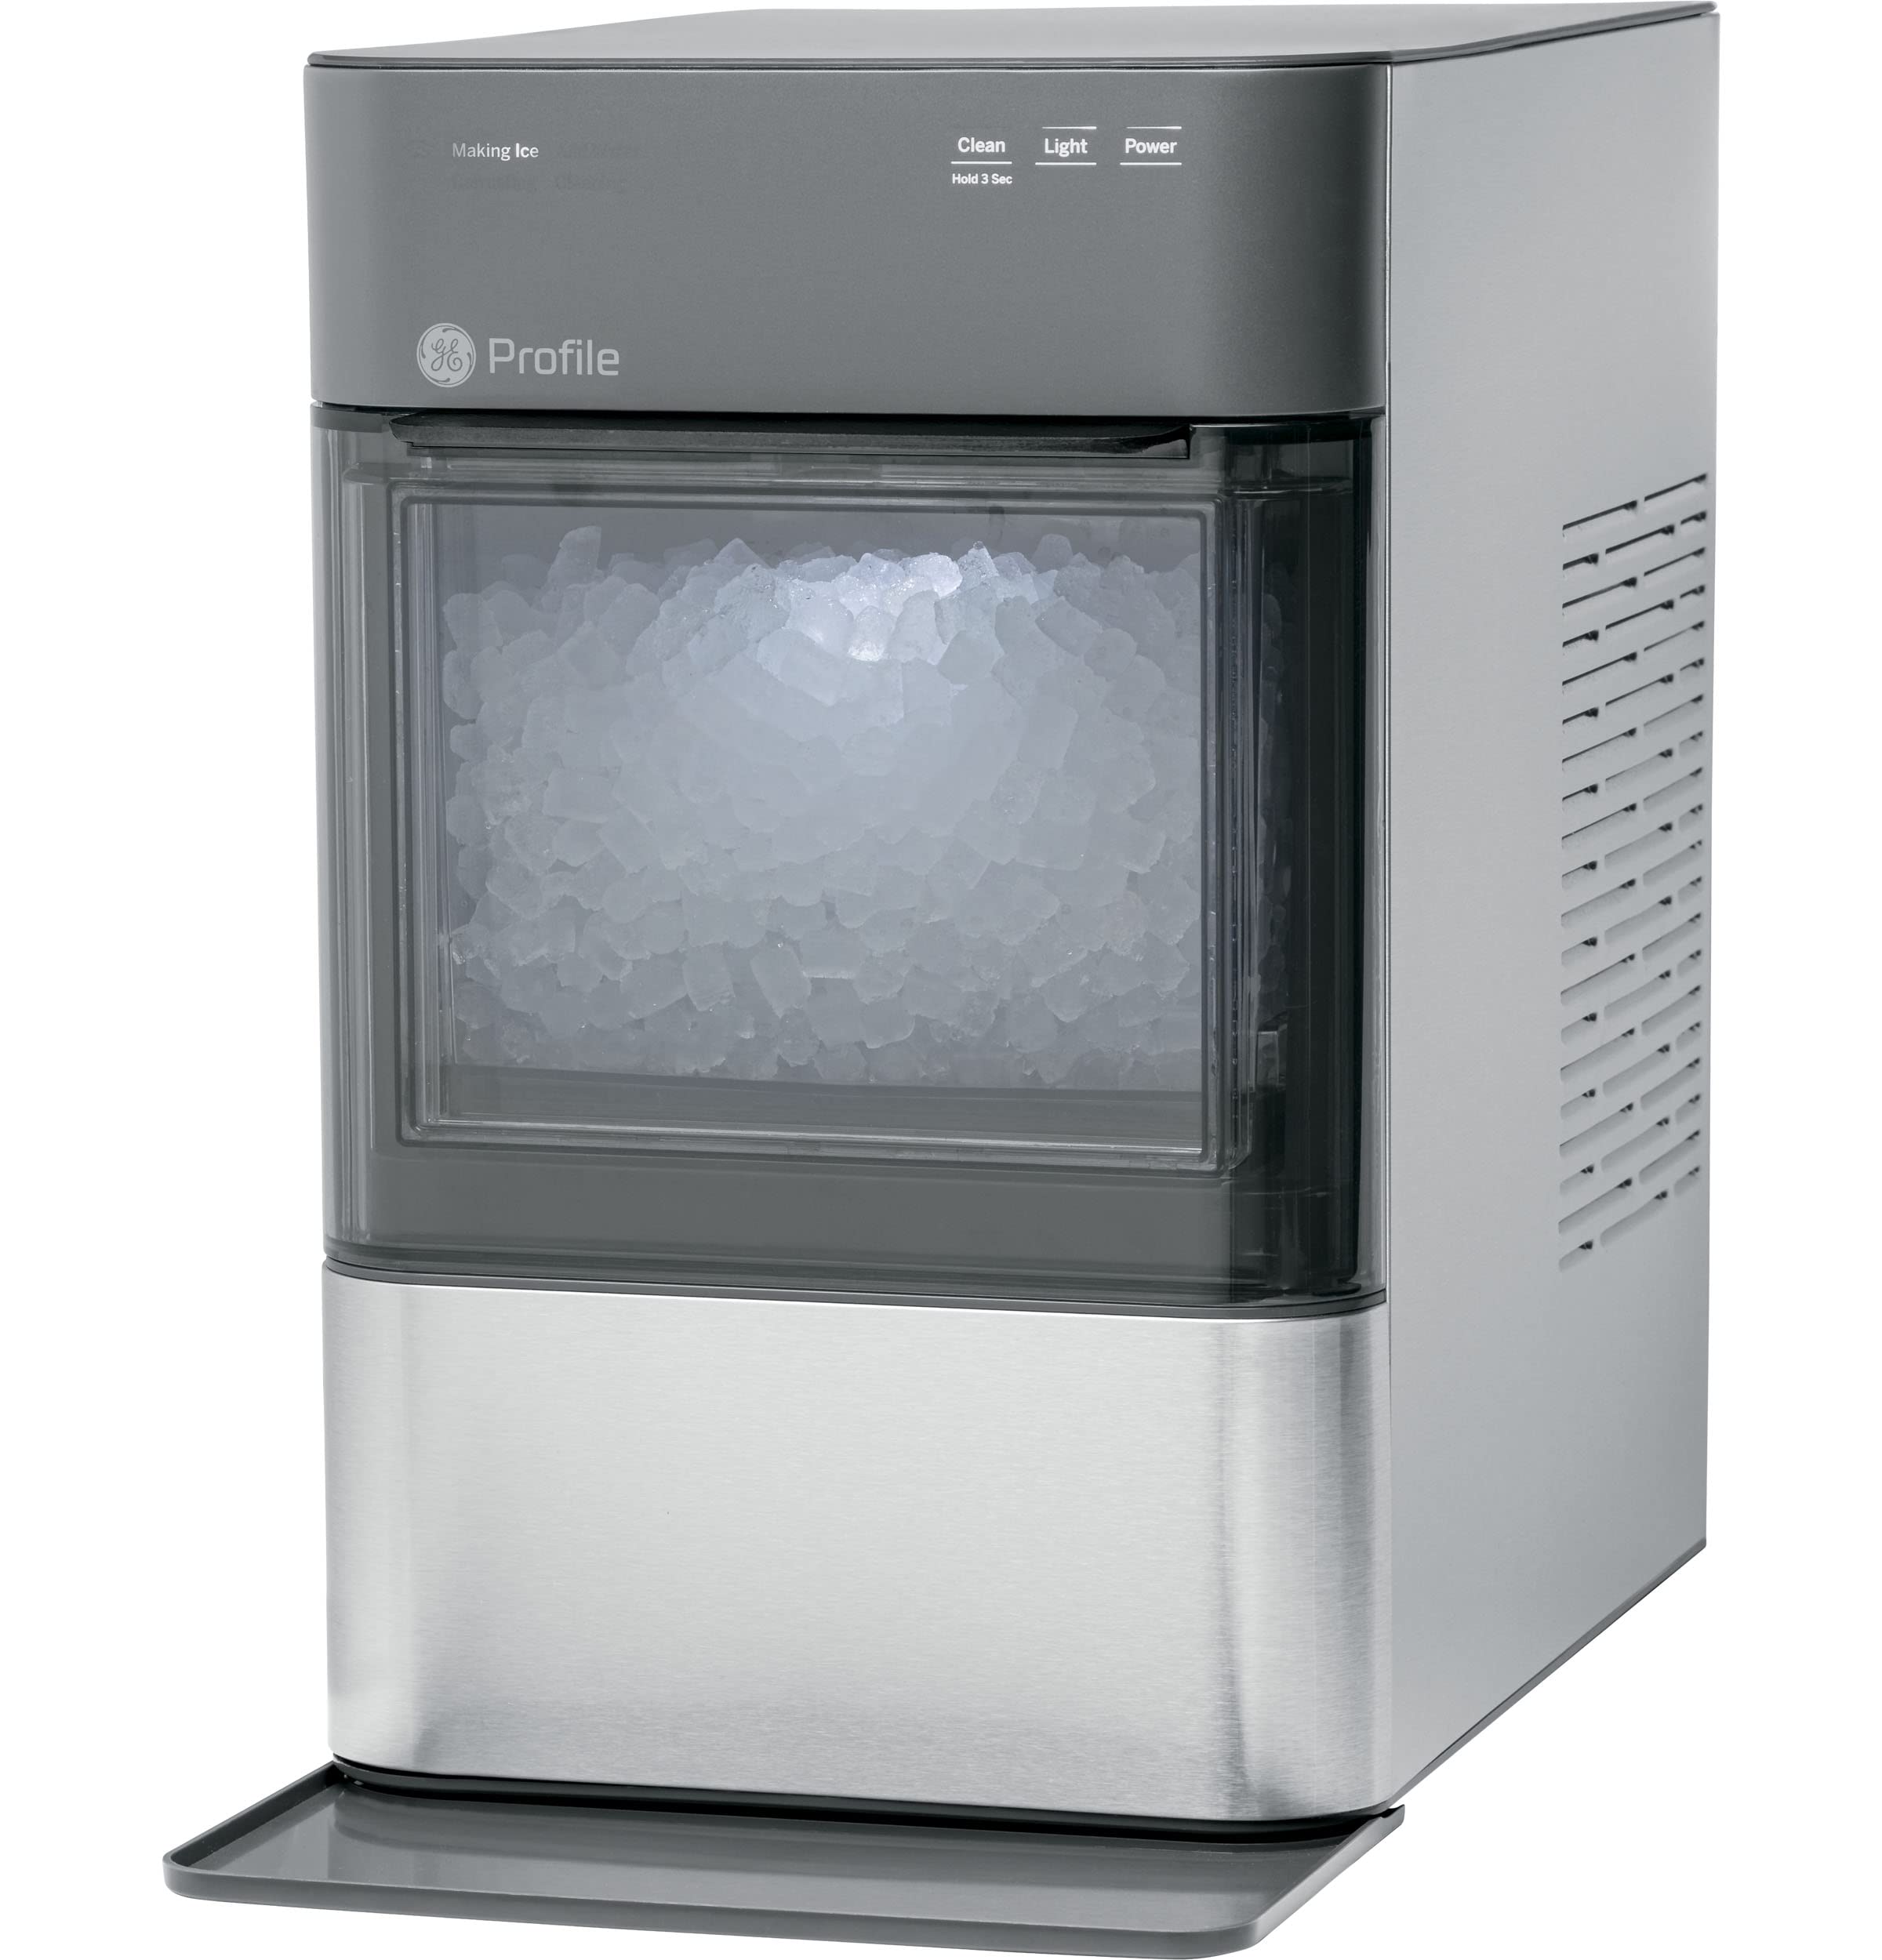 GE 简介蛋白石2.0 |台面 Nugt 制冰机 |带 WiFi 连接的制冰机 |智能家居厨房必备品 |不锈钢...